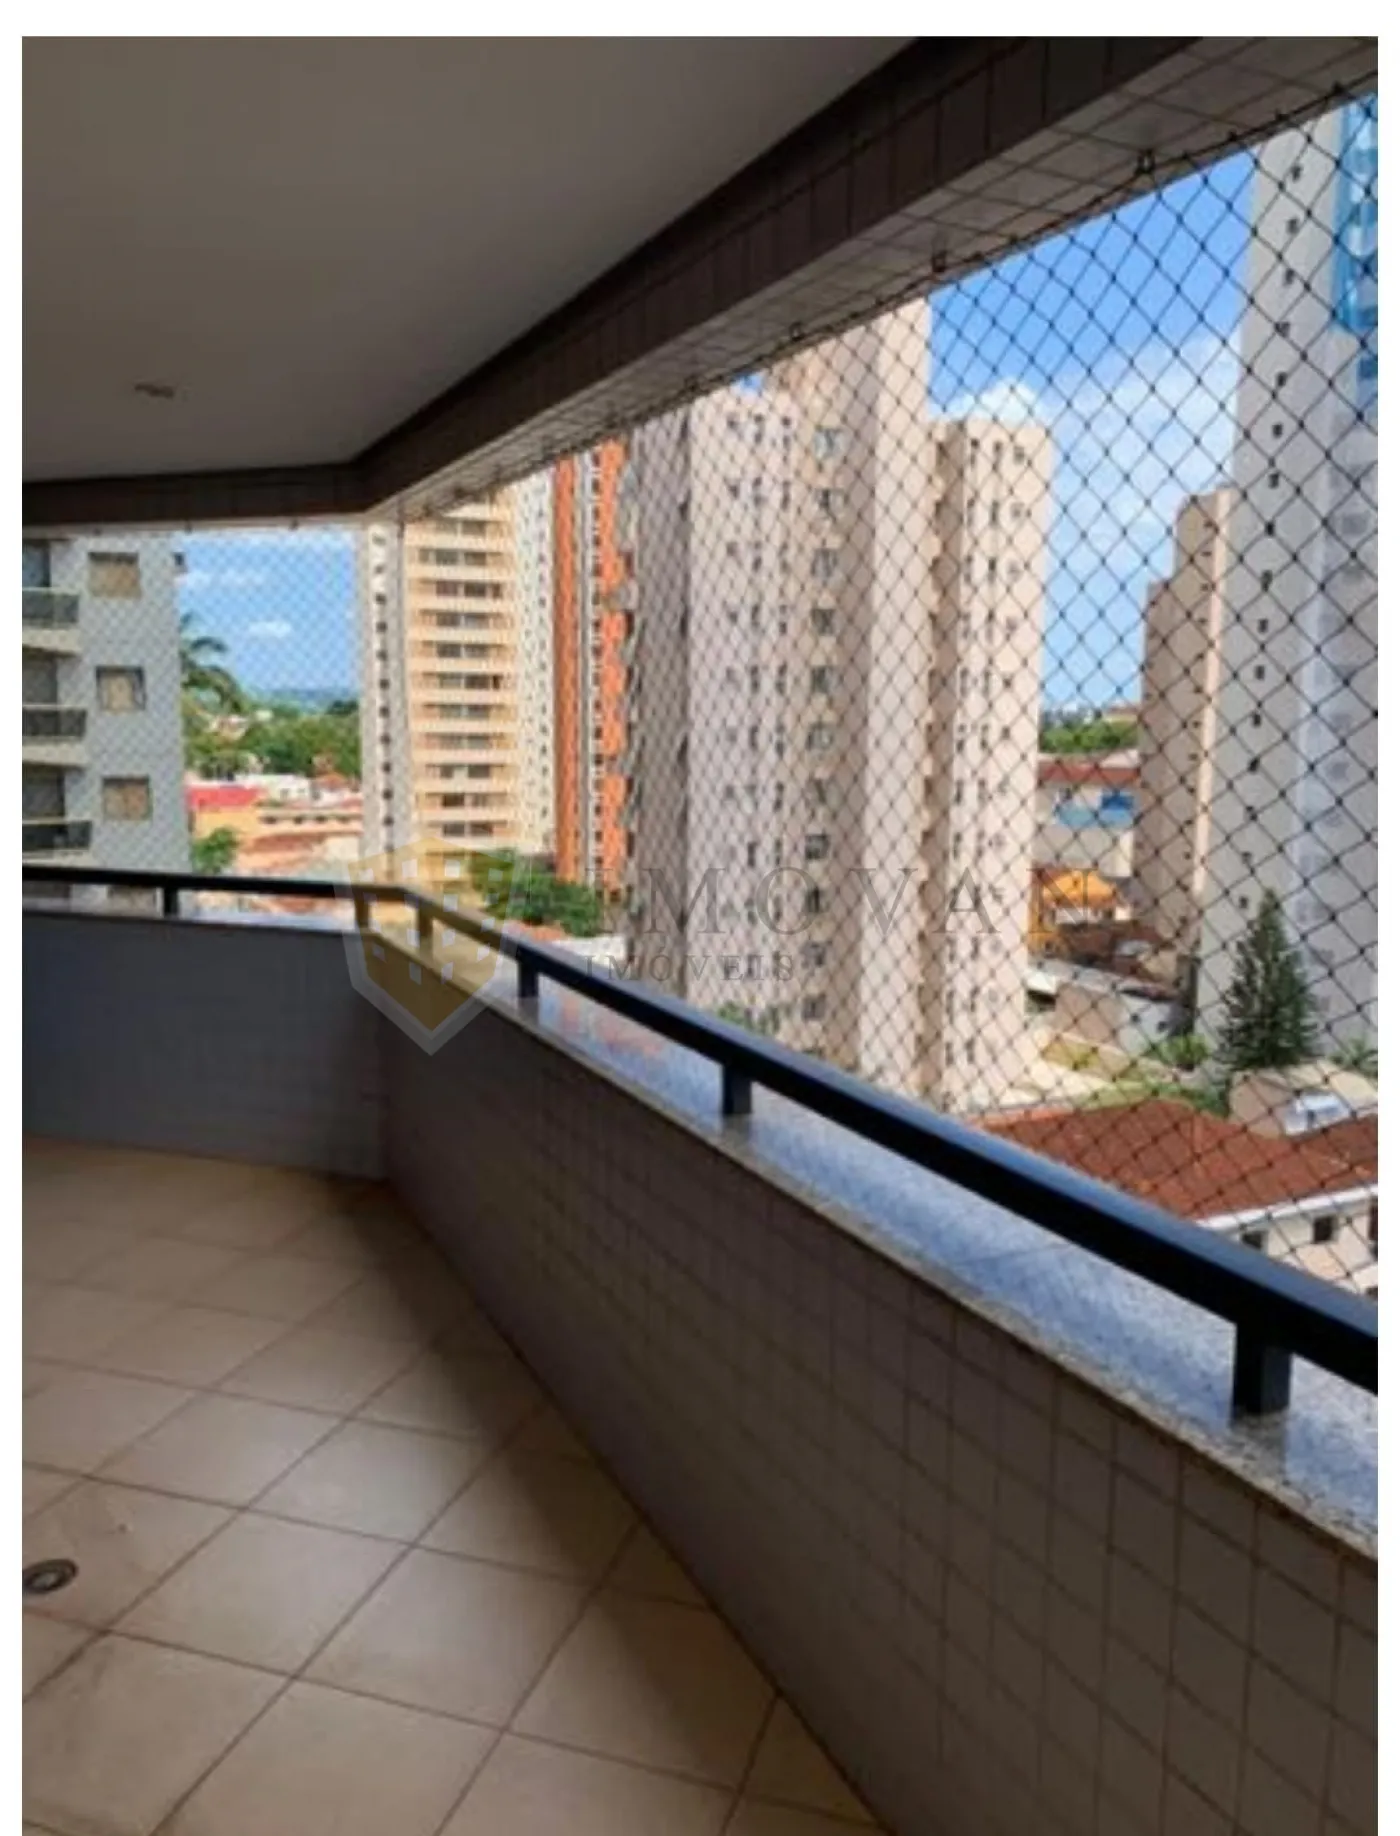 Comprar Apartamento / Padrão em Ribeirão Preto R$ 650.000,00 - Foto 11